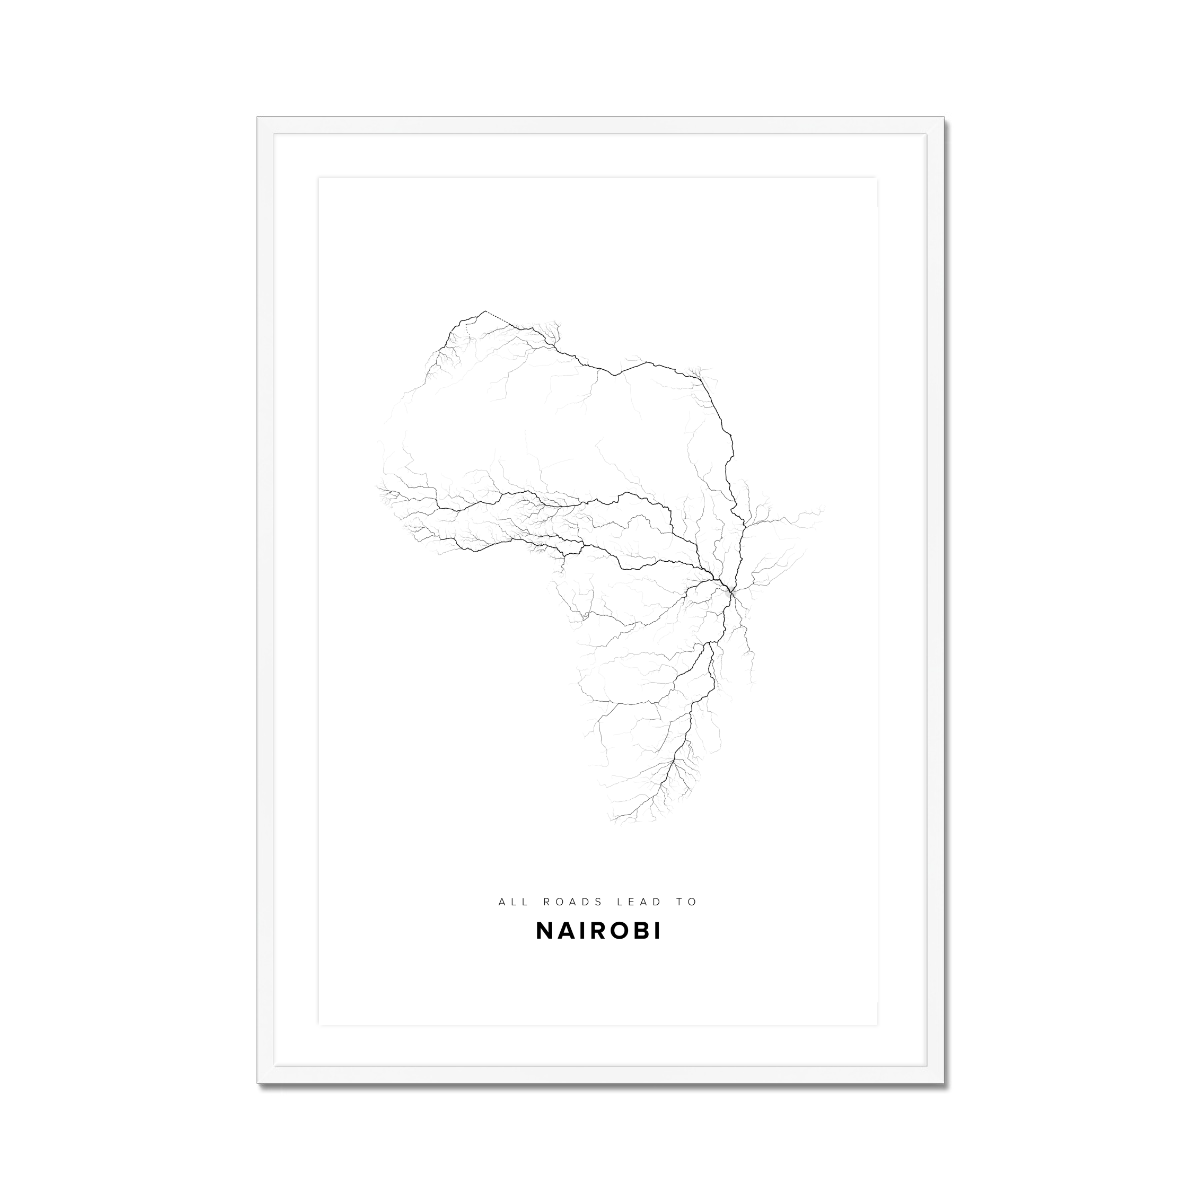 All roads lead to Nairobi (Kenya) Fine Art Map Print